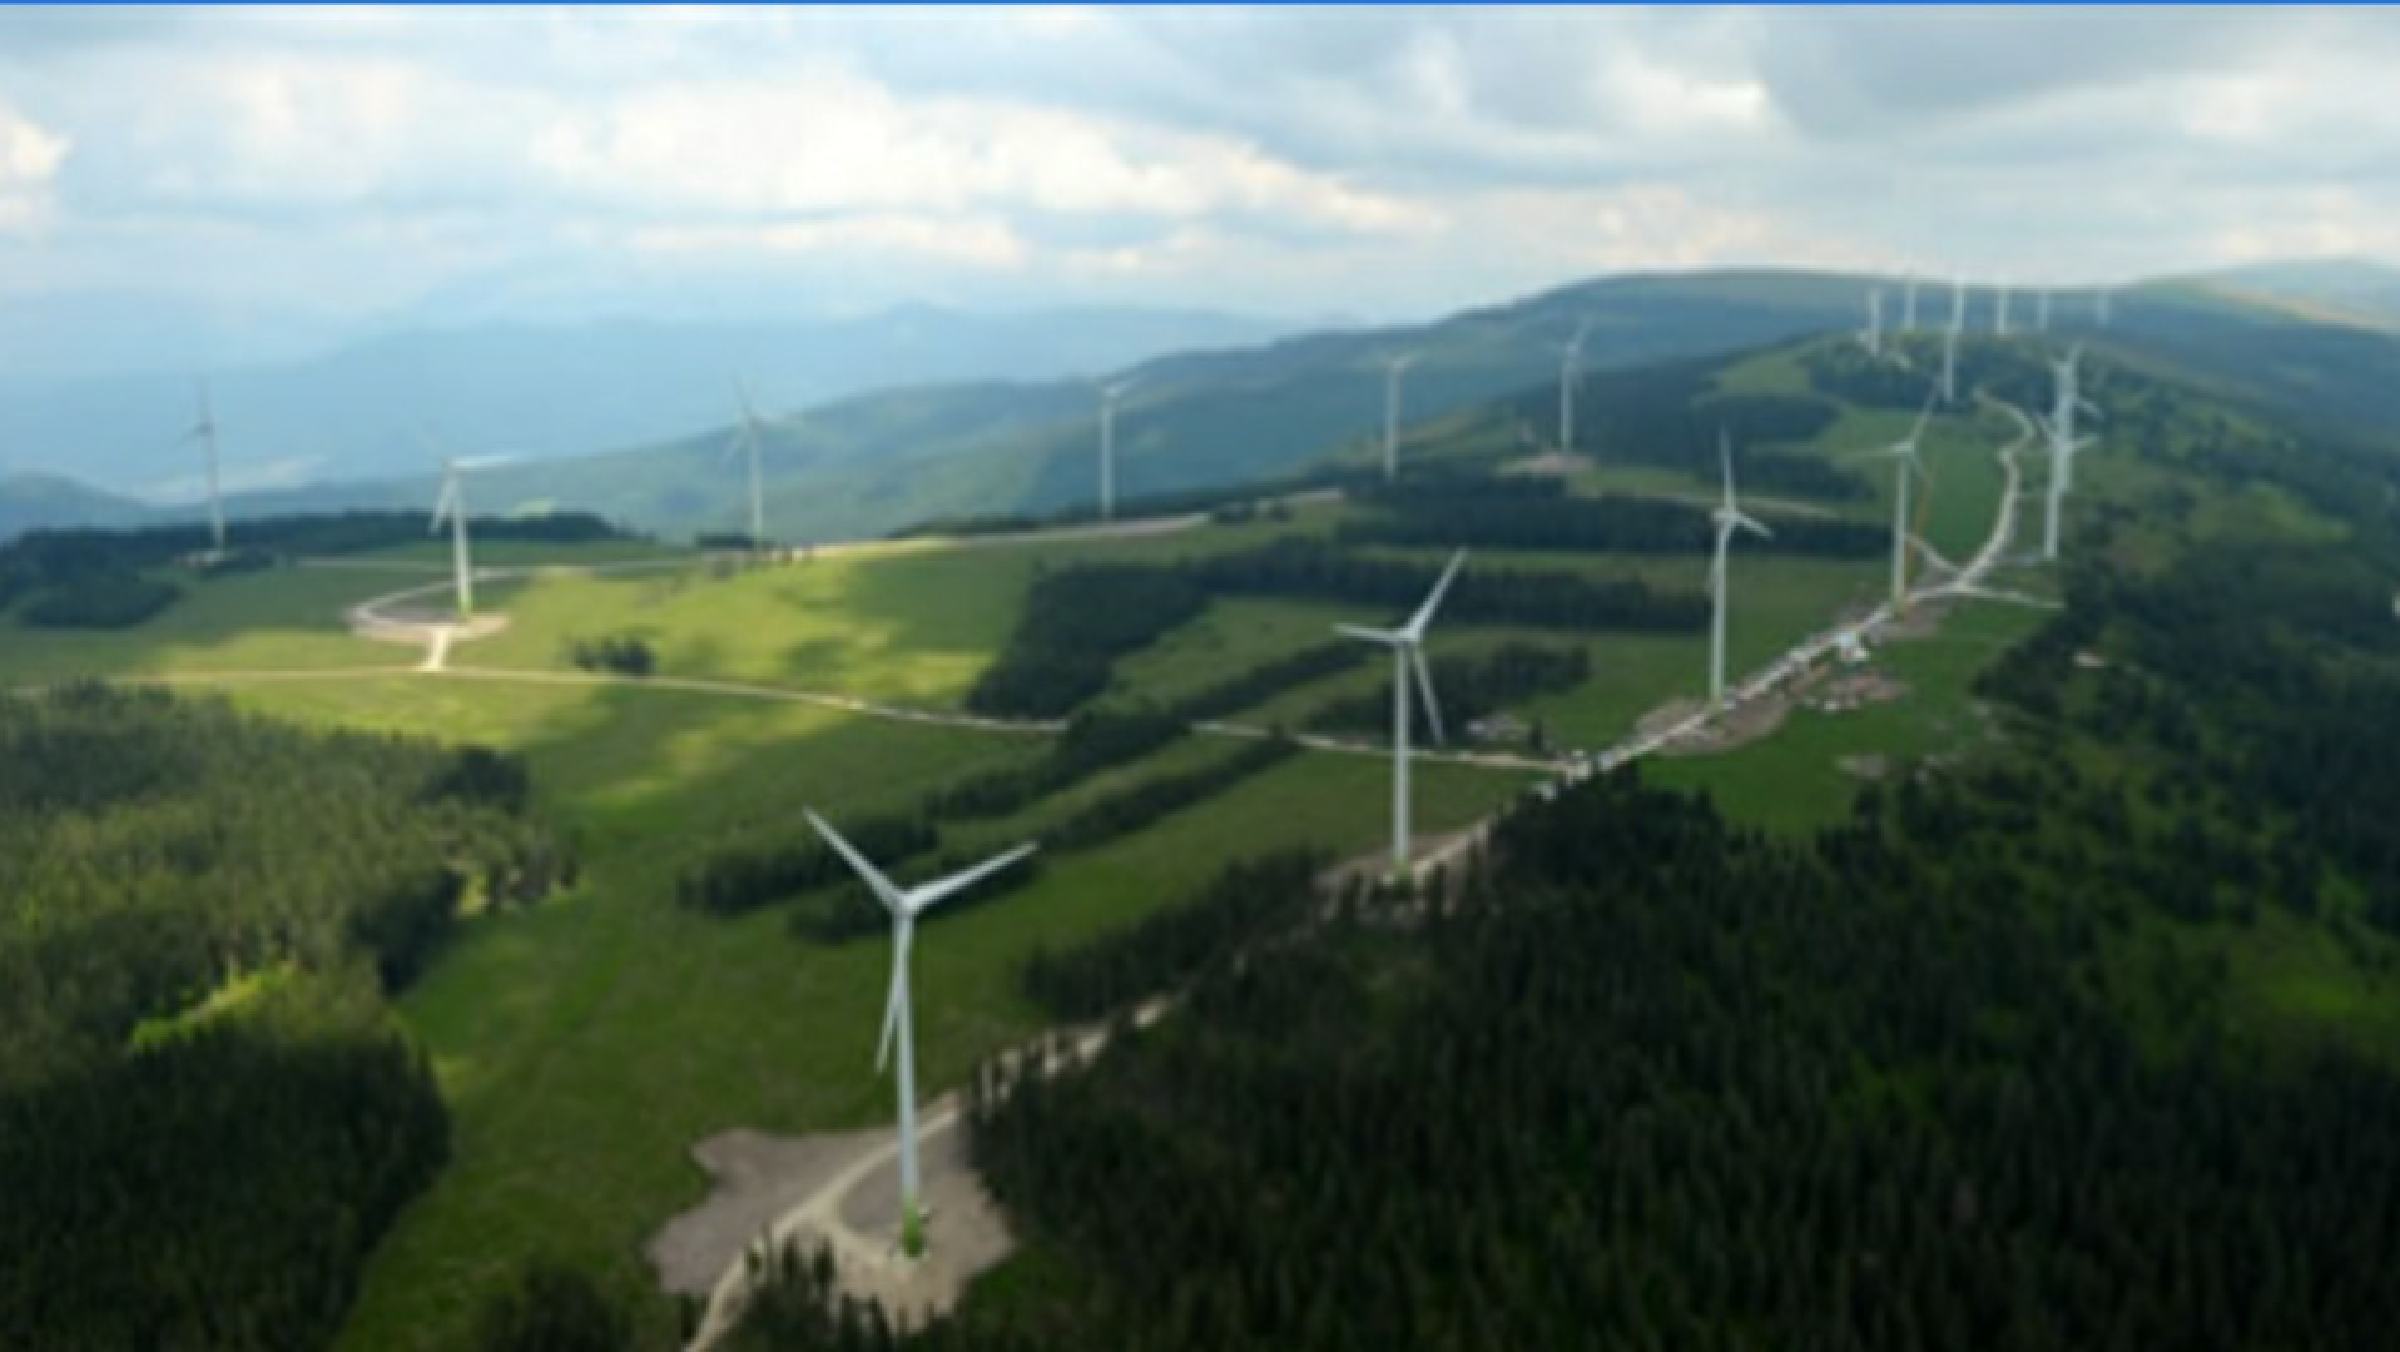 DNEVNA: Proti vetrnim elektrarnam: Postavitev bi pomenila nepopravljivo škodo za Pohorje